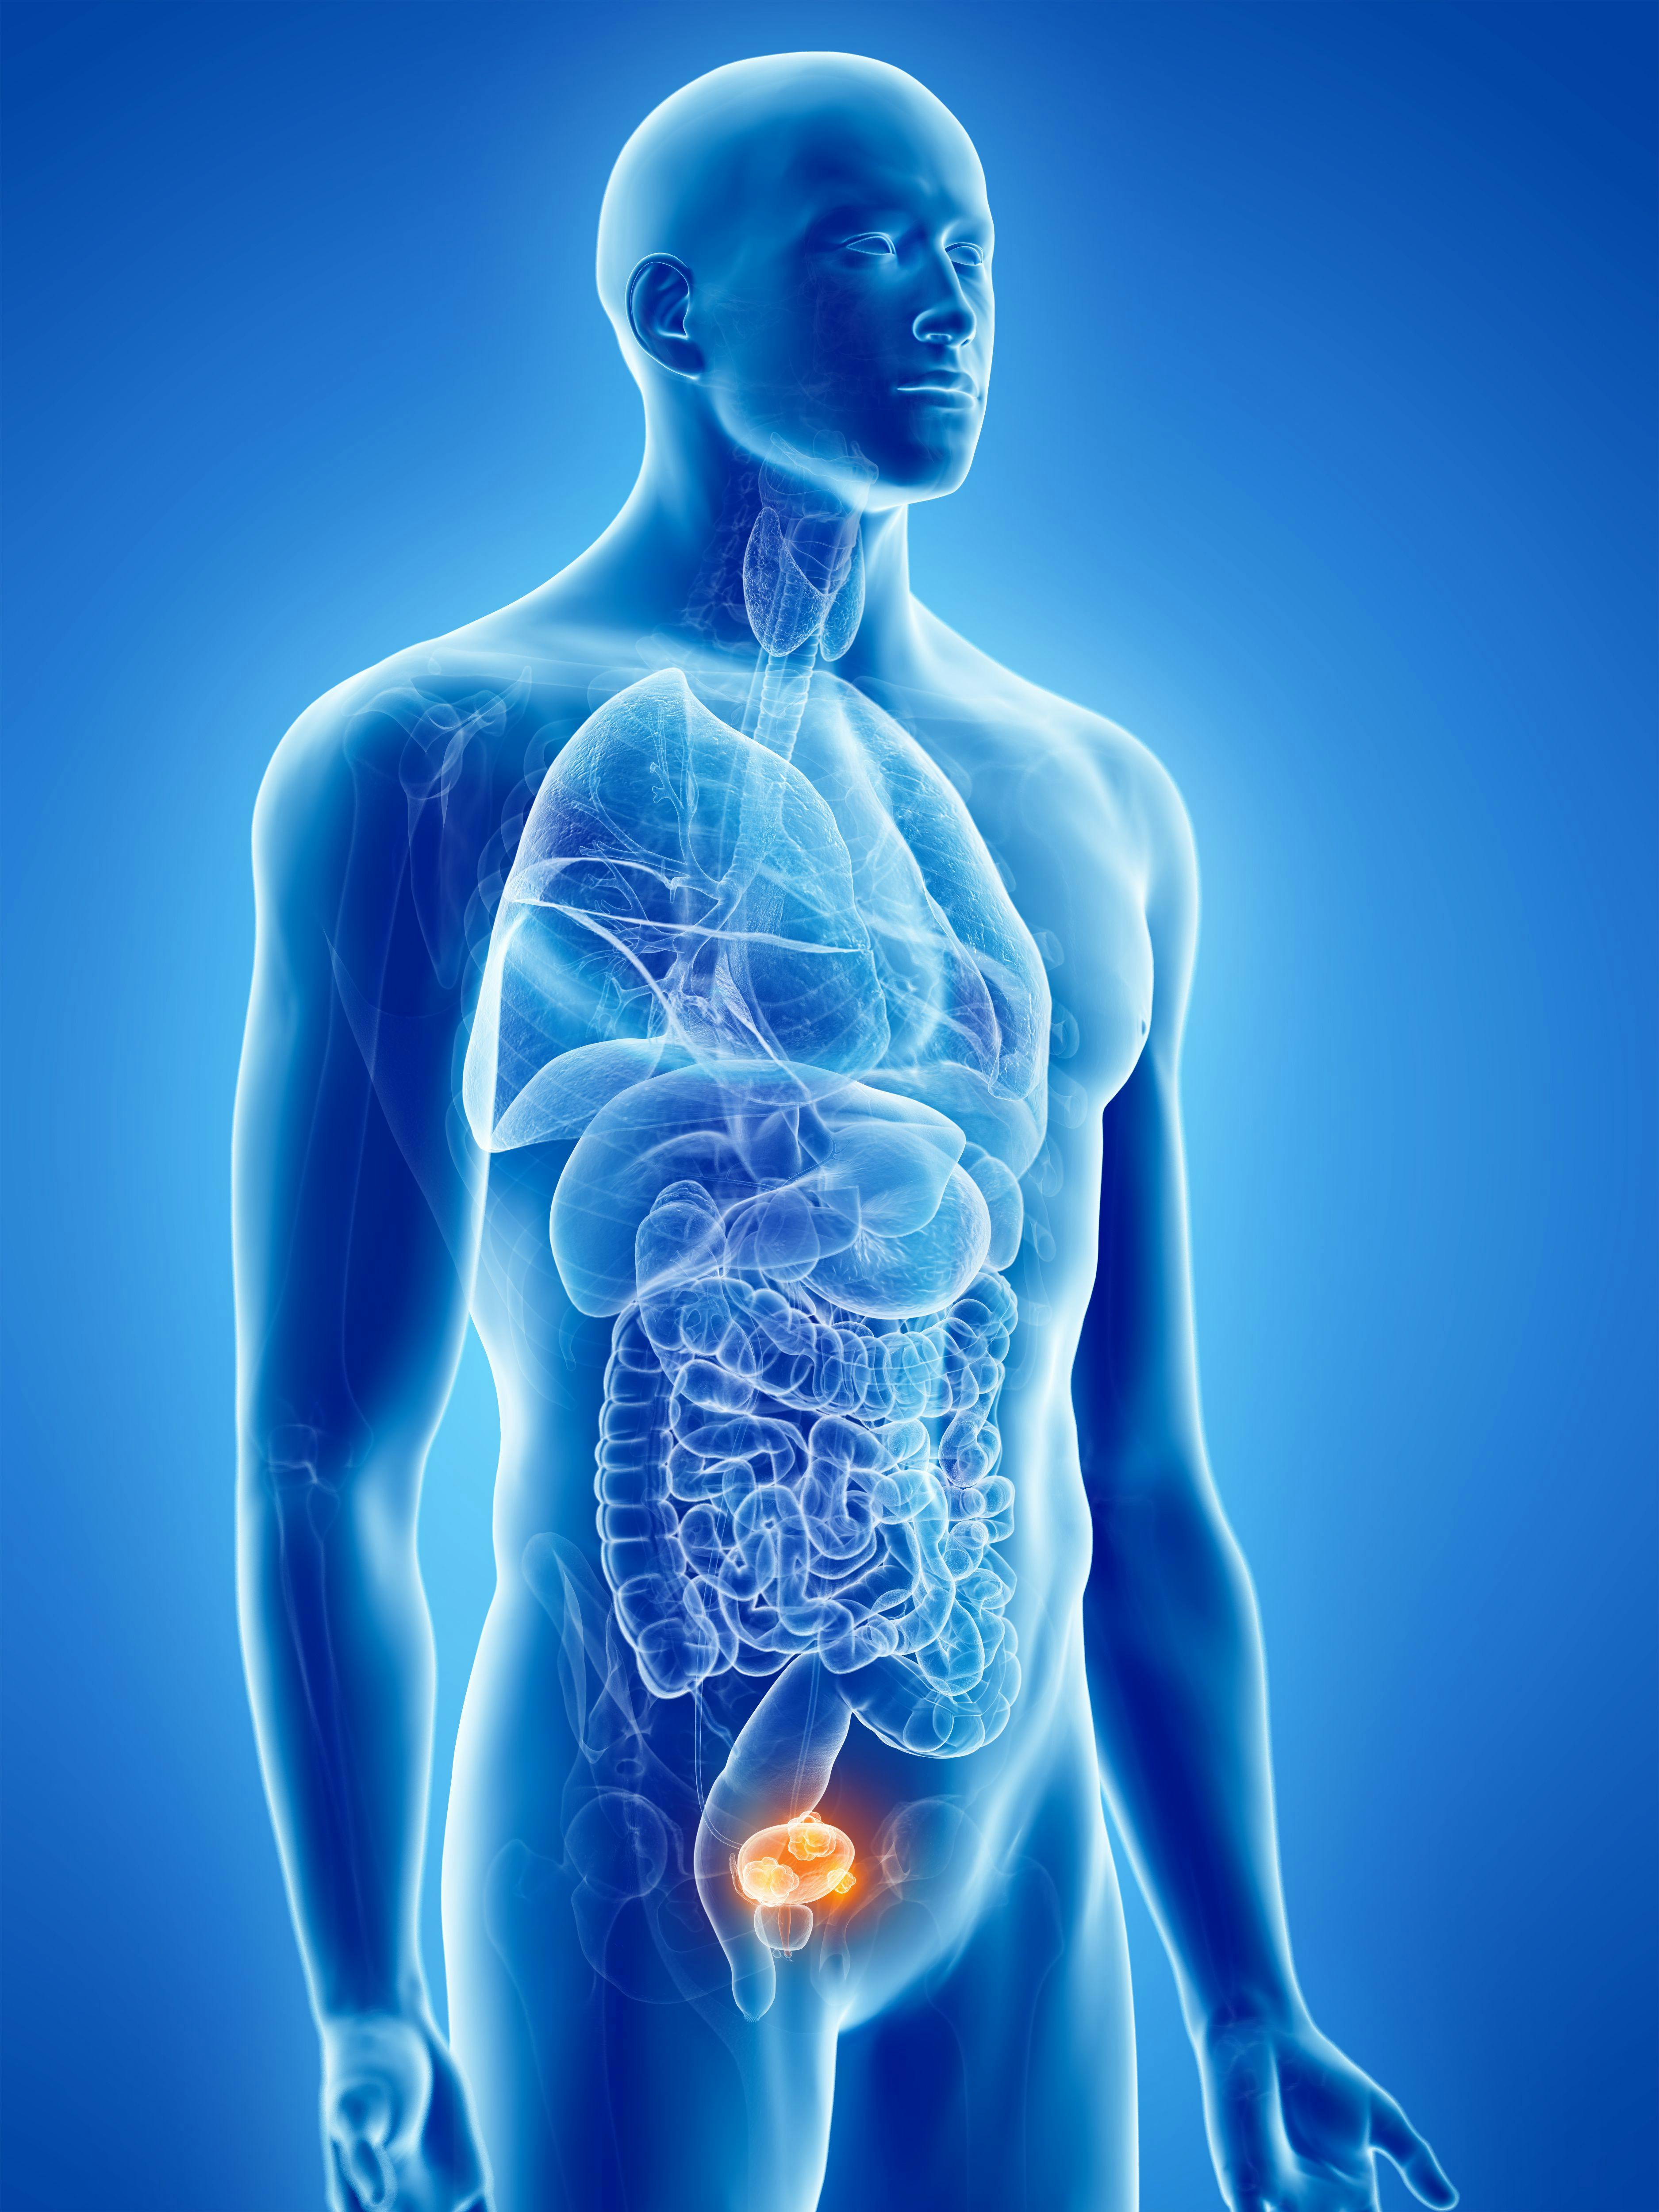 3D anatomical illustration of bladder cancer: © SciePro - stock.adobe.com